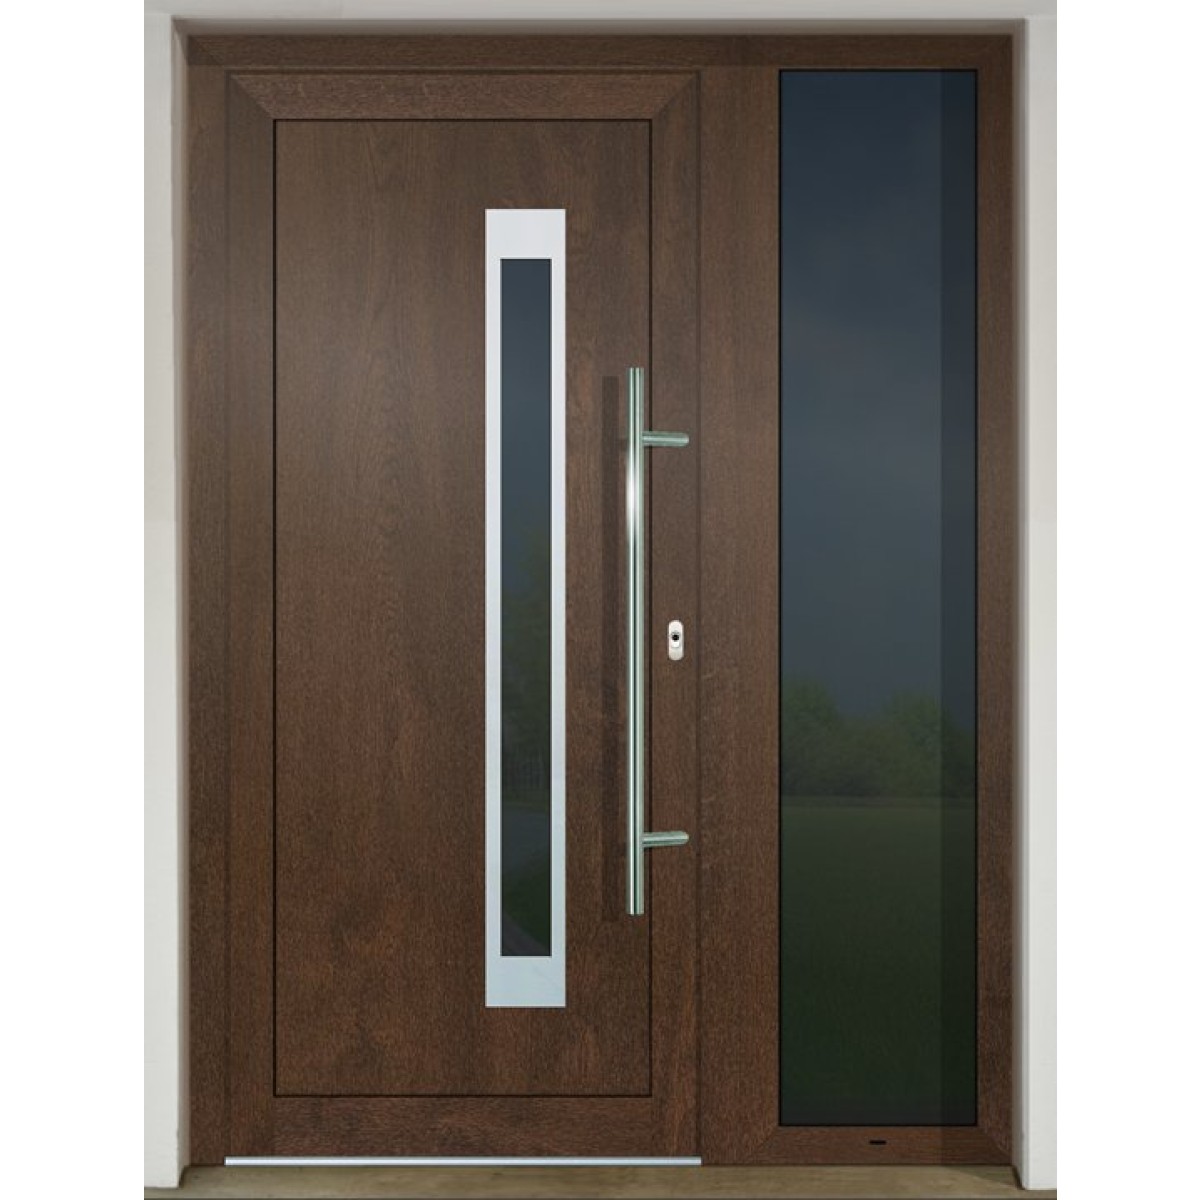 Gava HPL 762 Nussbaum - entrance door